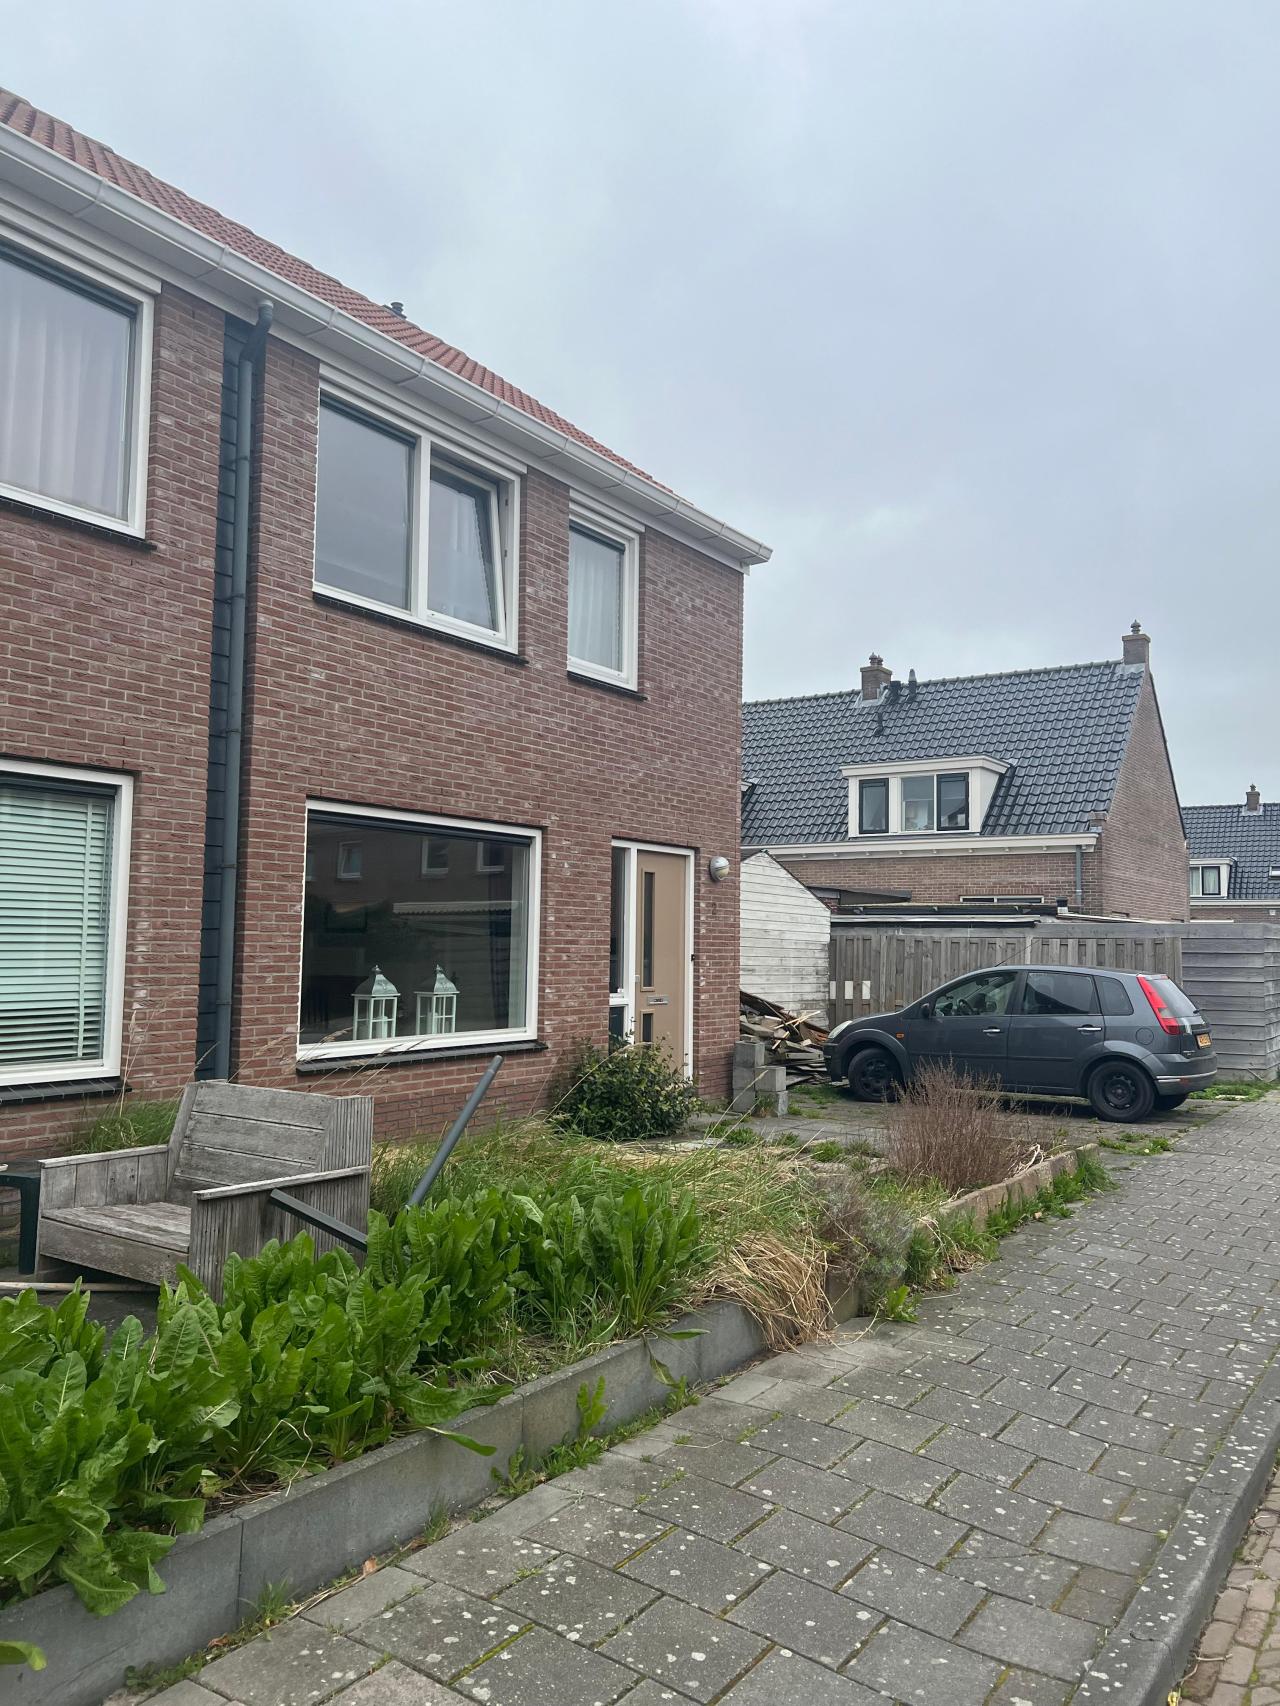 Veeteeltstraat 2, 1741 AM Schagen, Nederland